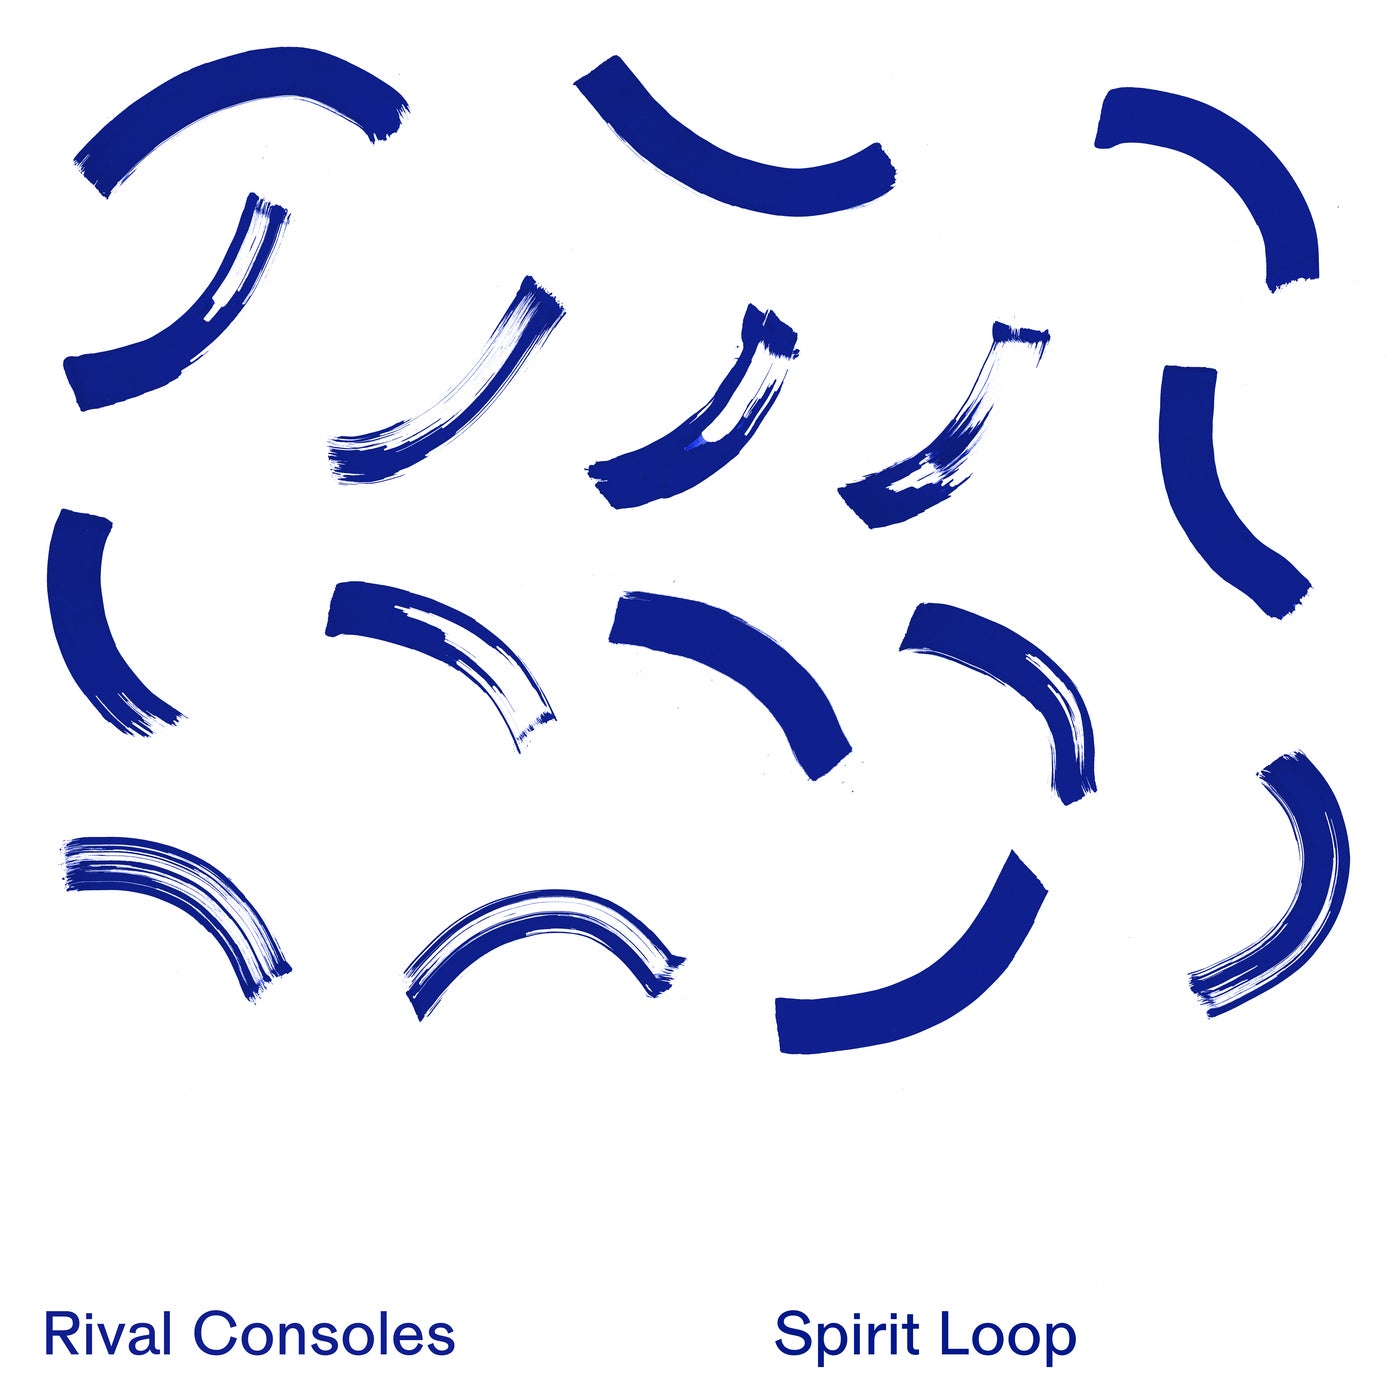 Spirit Loop